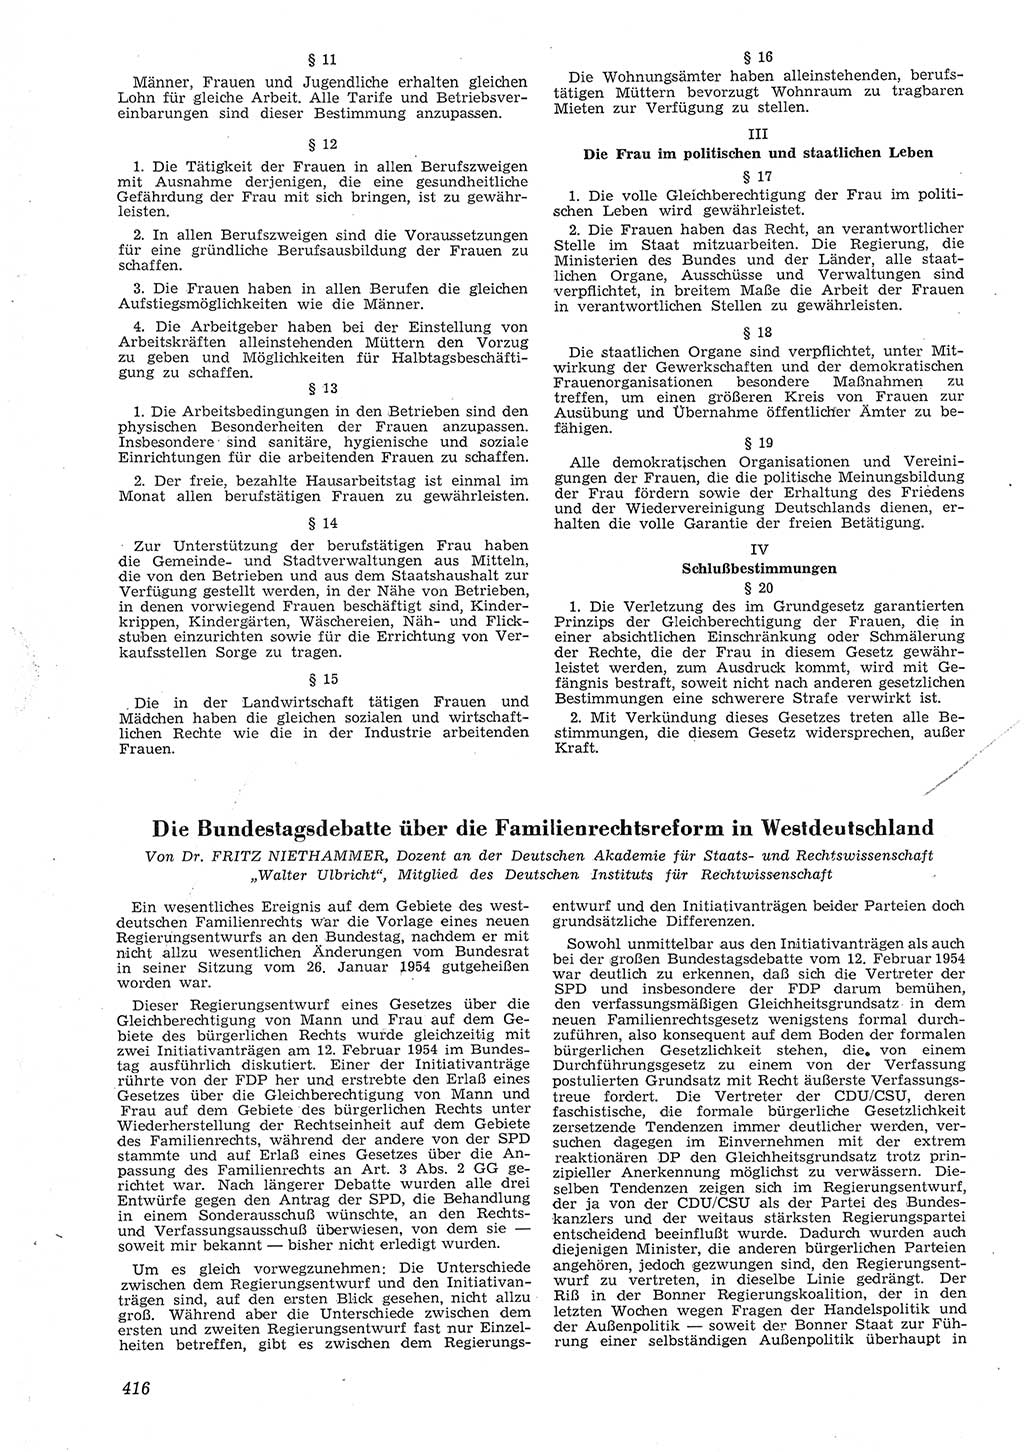 Neue Justiz (NJ), Zeitschrift für Recht und Rechtswissenschaft [Deutsche Demokratische Republik (DDR)], 8. Jahrgang 1954, Seite 416 (NJ DDR 1954, S. 416)